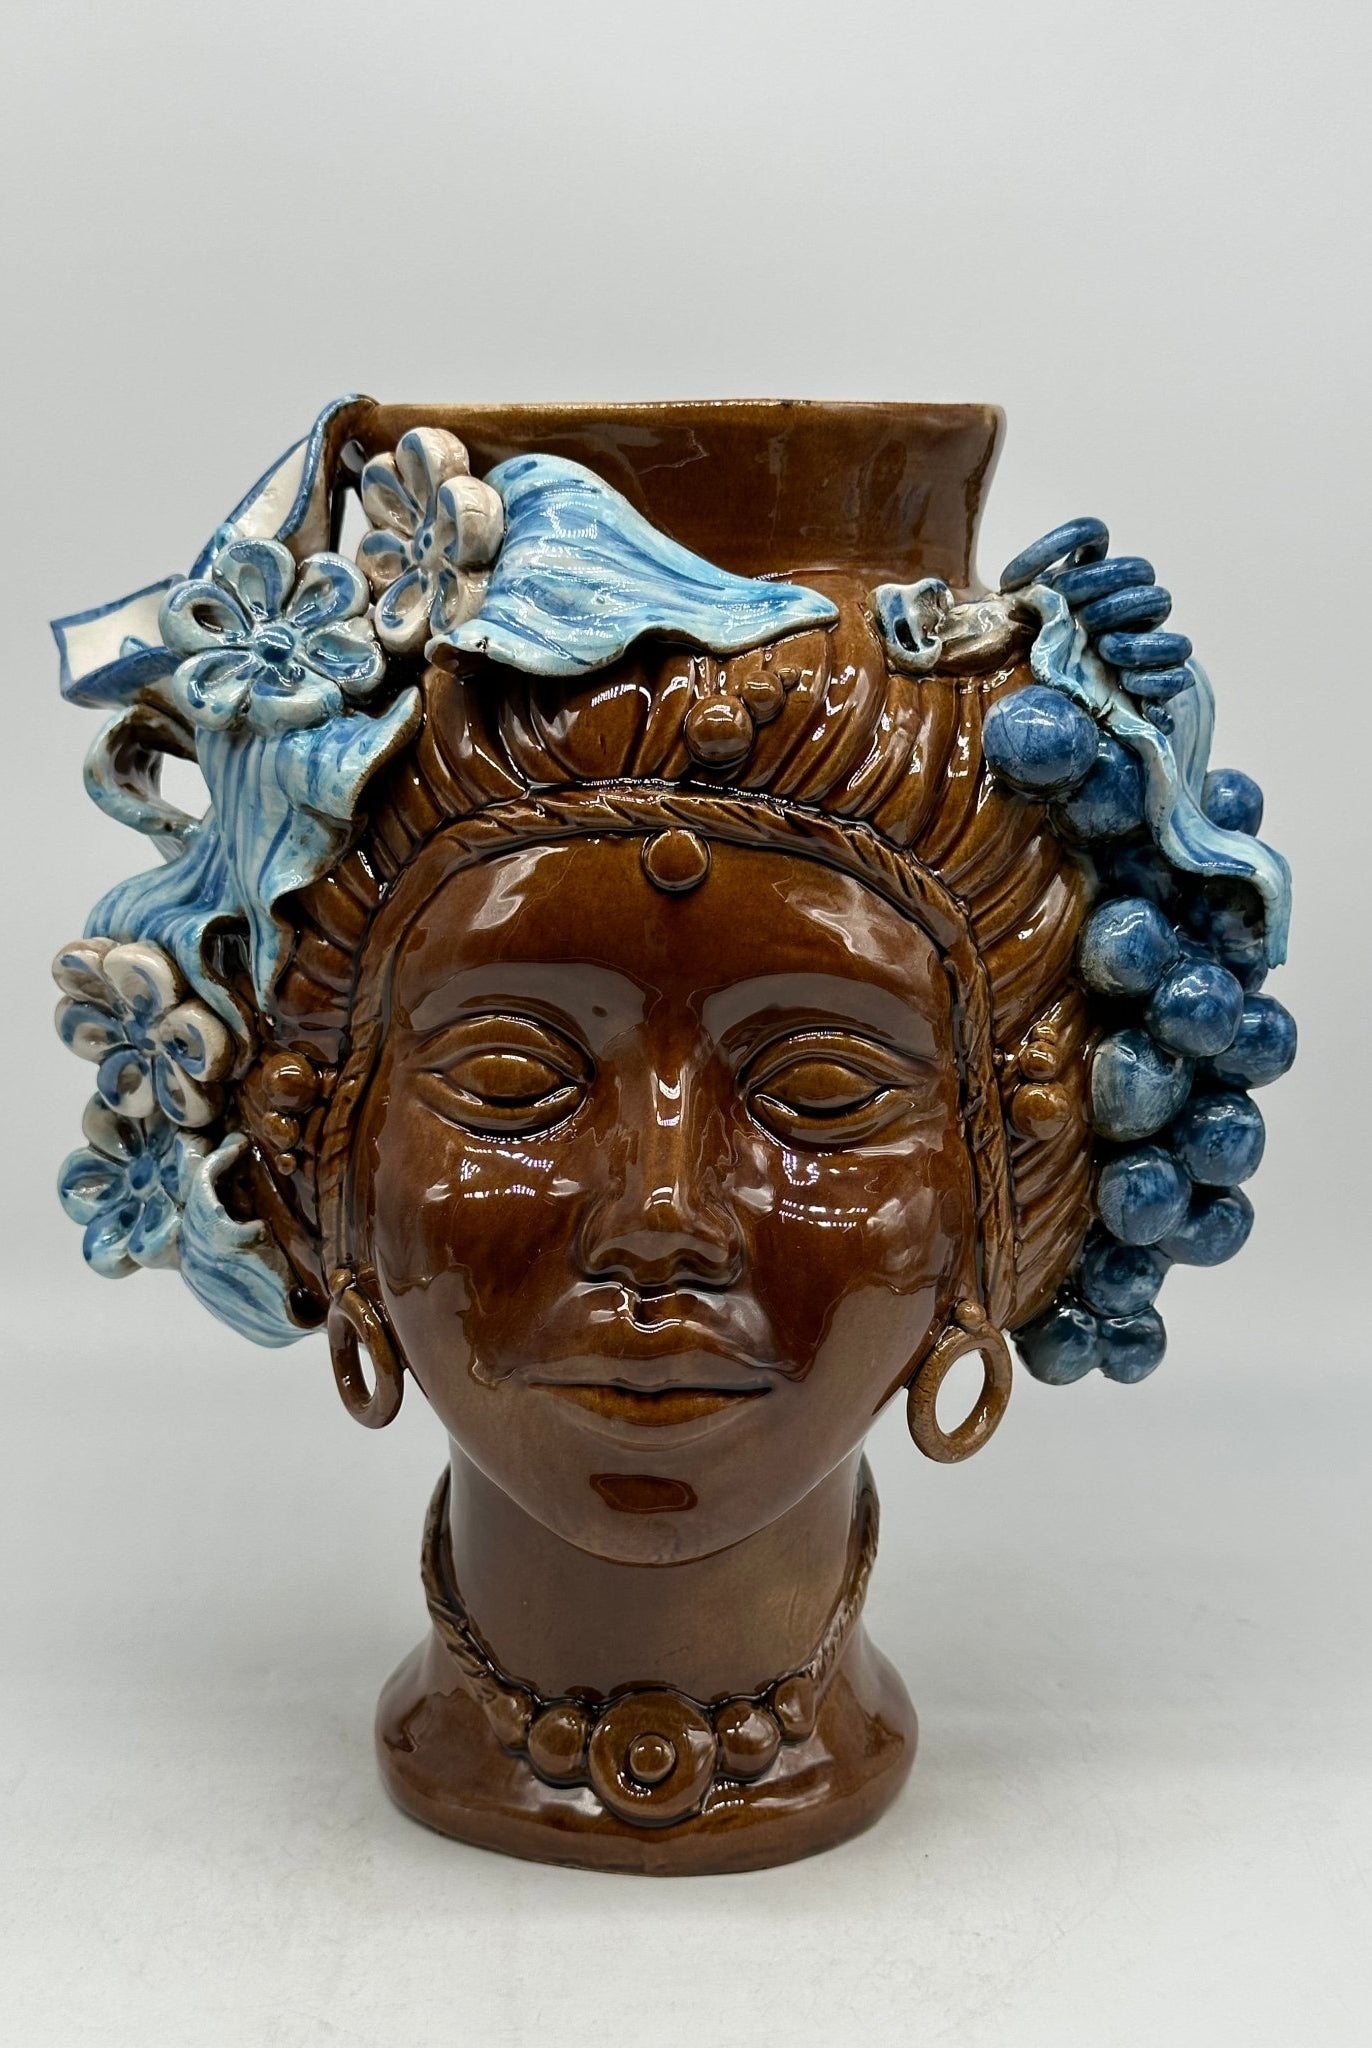 Teste di Moro Mediterraneo Ceramica Caltagirone cm H.29 L.22 Artigianale Marrone Azzurro - DD CERAMICHE SICILIANE